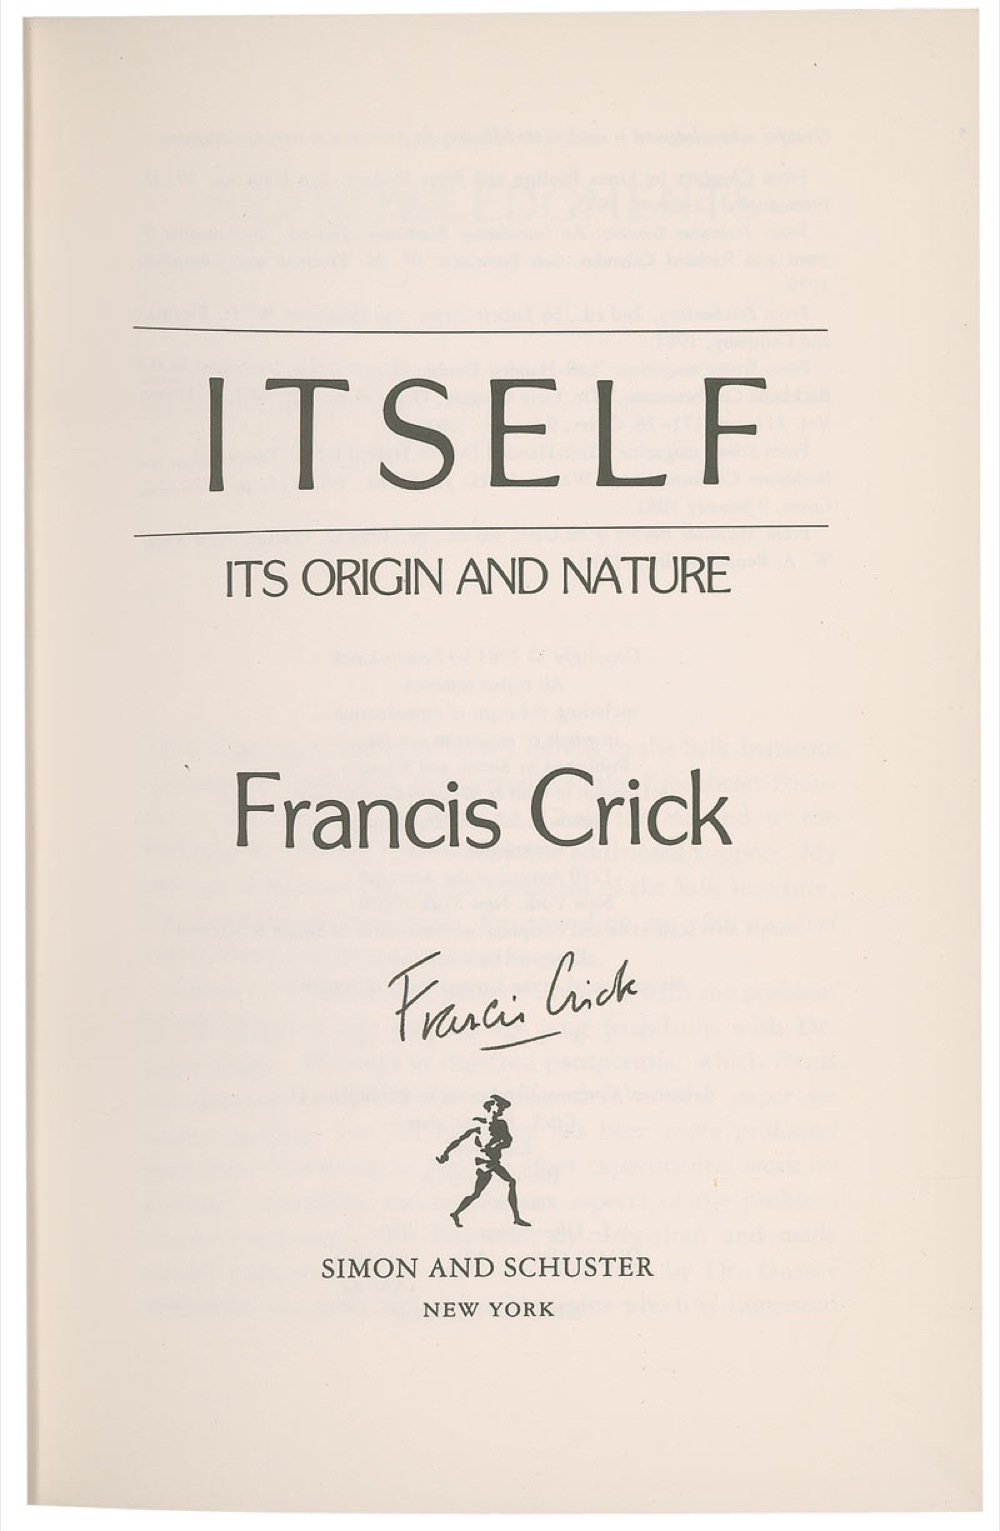 Lot #215 DNA: Francis Crick